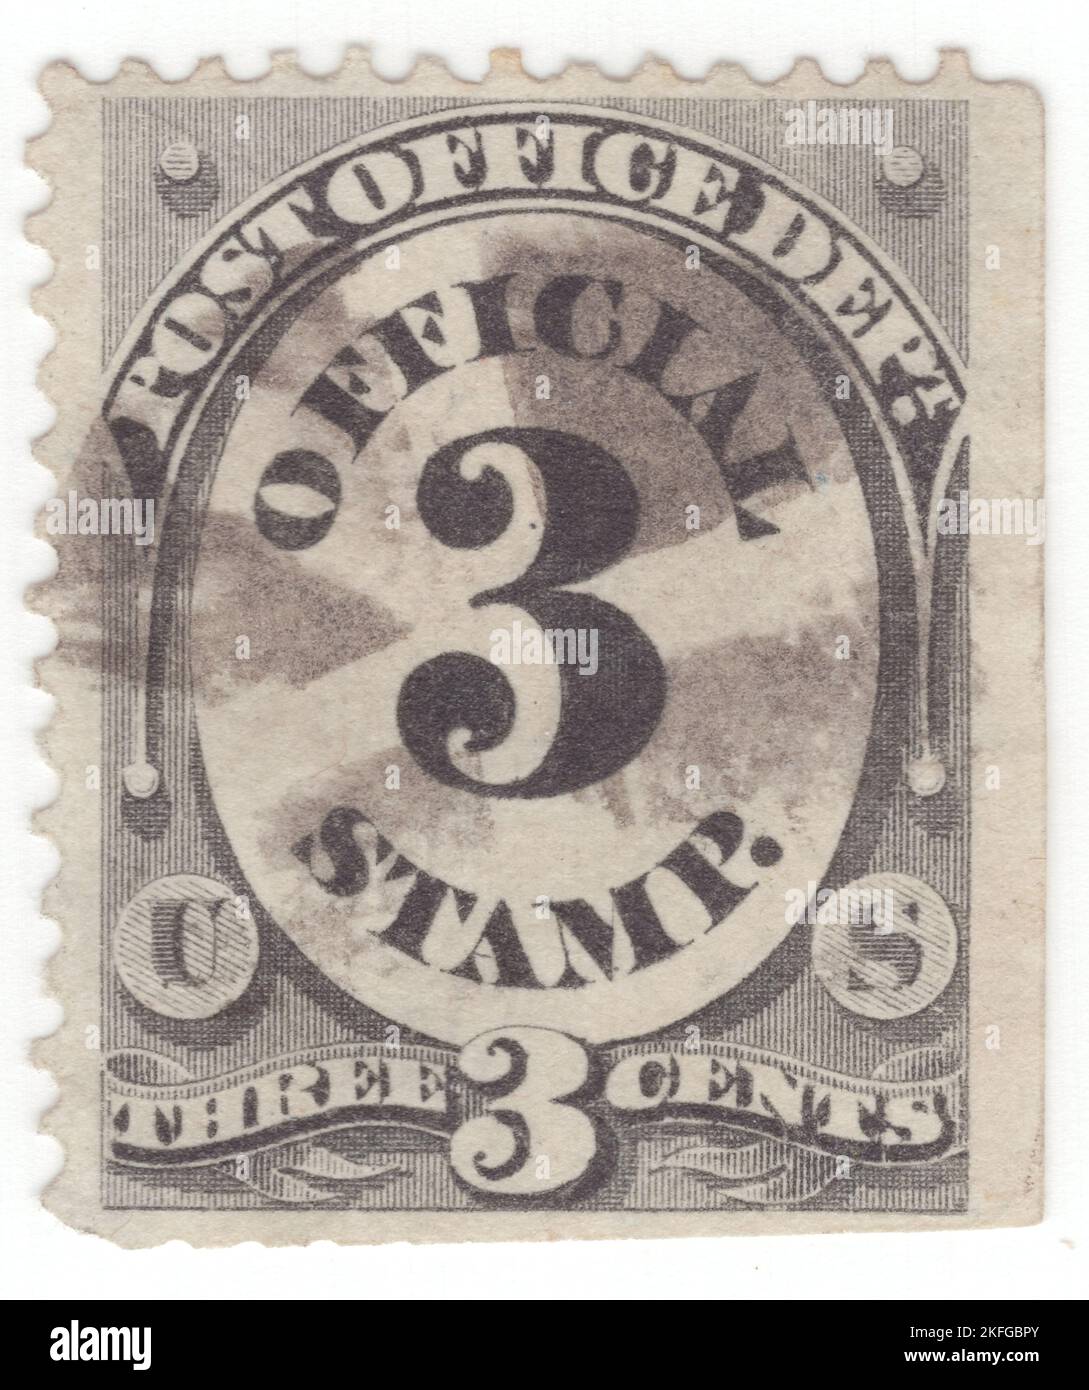 USA - 1873: Eine schwarze 3 Cent-Marke mit ovalem Rahmen und Zahlen (Stückelung). Über dem Rahmen befindet sich ein Banner mit der Aufschrift 'POST OFFICE Dept'. Das Frankierprivileg, das seit dem 1. Juli 1873 aufgehoben wurde, wurden diese Briefmarken für jeden der Exekutivabteilungen der Regierung zur Vorauszahlung des Postaufpreises in offiziellen Angelegenheiten bereitgestellt. Die ersten strafmarken wurden 1877 zugelassen, und ihre erweiterte Verwendung nach 1879 reduzierte den Bedarf an offiziellen Marken, deren Verwendung am 5. Juli 1884 endgültig aufgehoben wurde Stockfoto